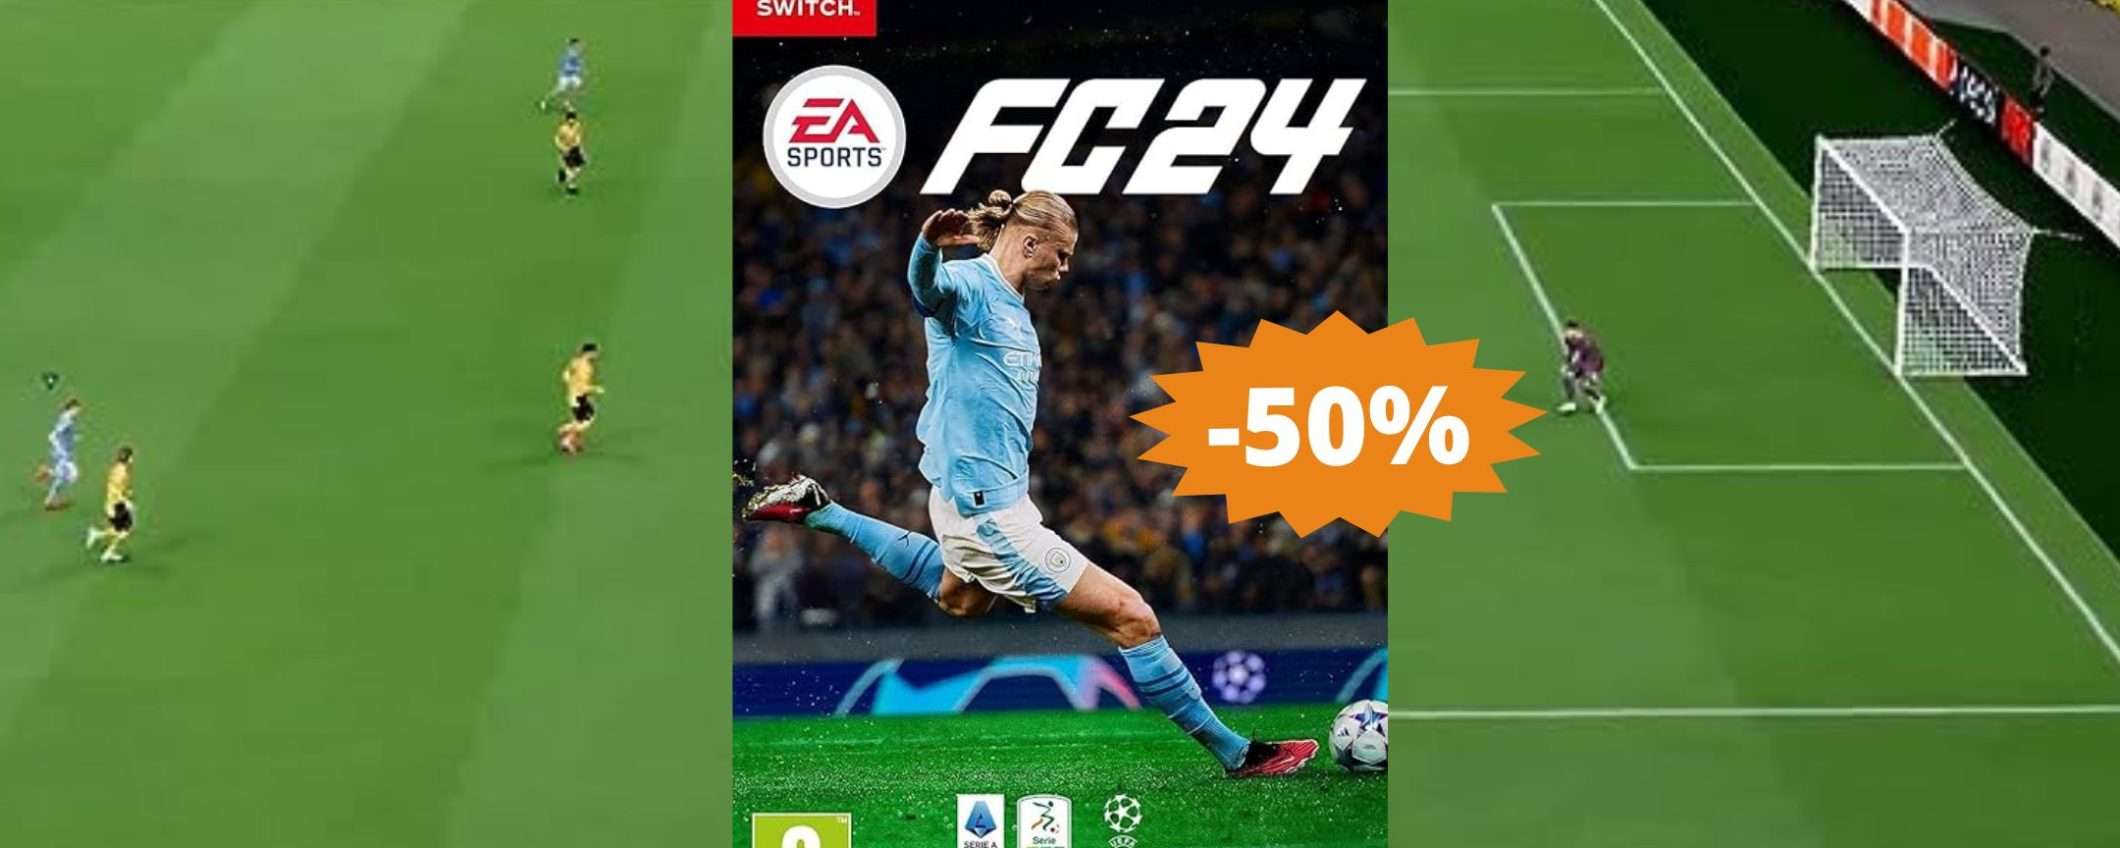 EA SPORTS FC 24 per Switch: sconto FOLLE del 50%